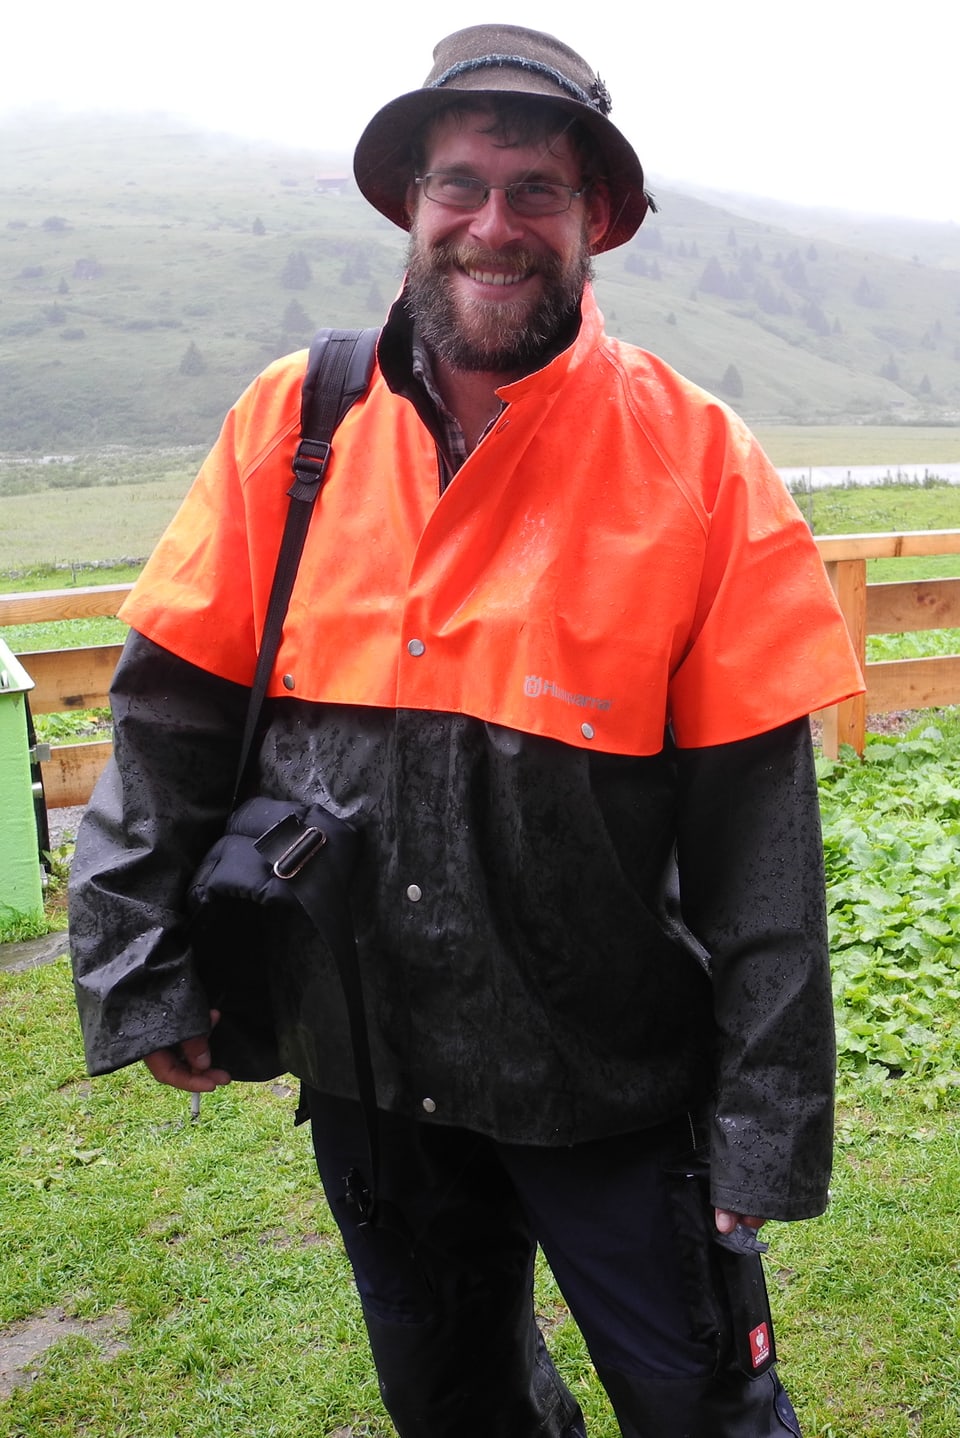 Ludwig Willmann mit orangefarbenem, regendichtem Umhang über wetterfester Kleidung und seiner Tasche mit wichtigen Utensilien über der Schulter.